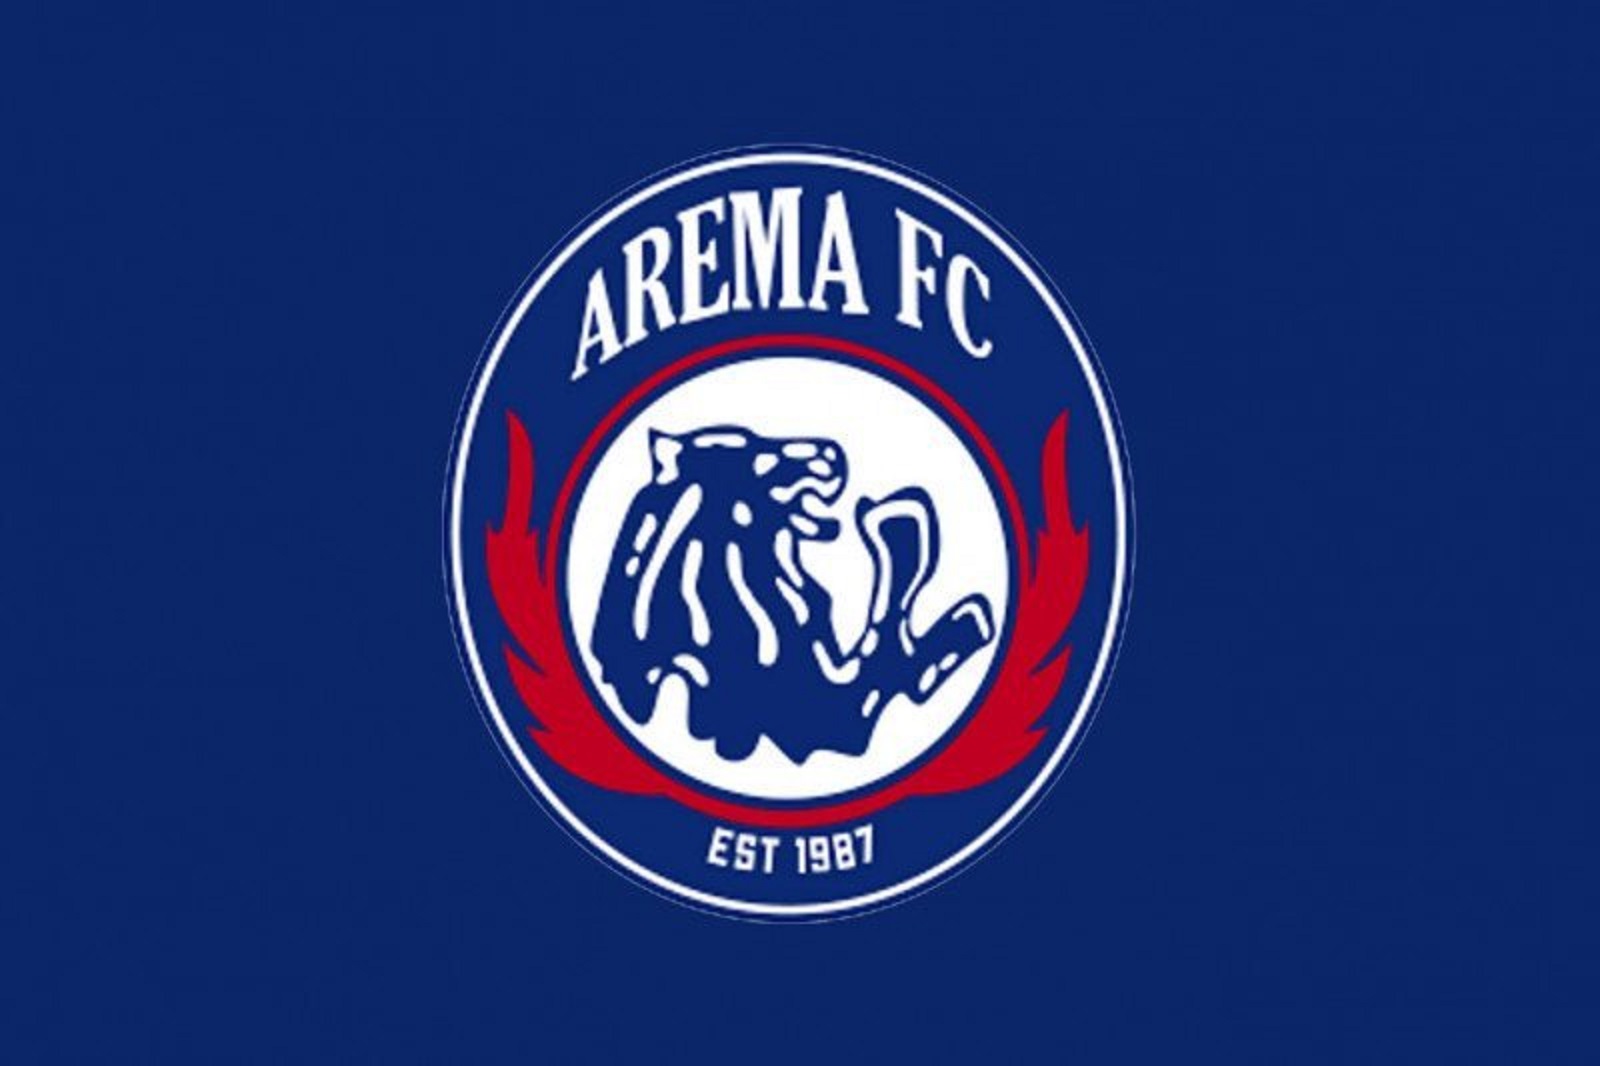 Arema FC Gercep di Bursa Transfer, Kejar Asa Juara Liga 1 2022/2023